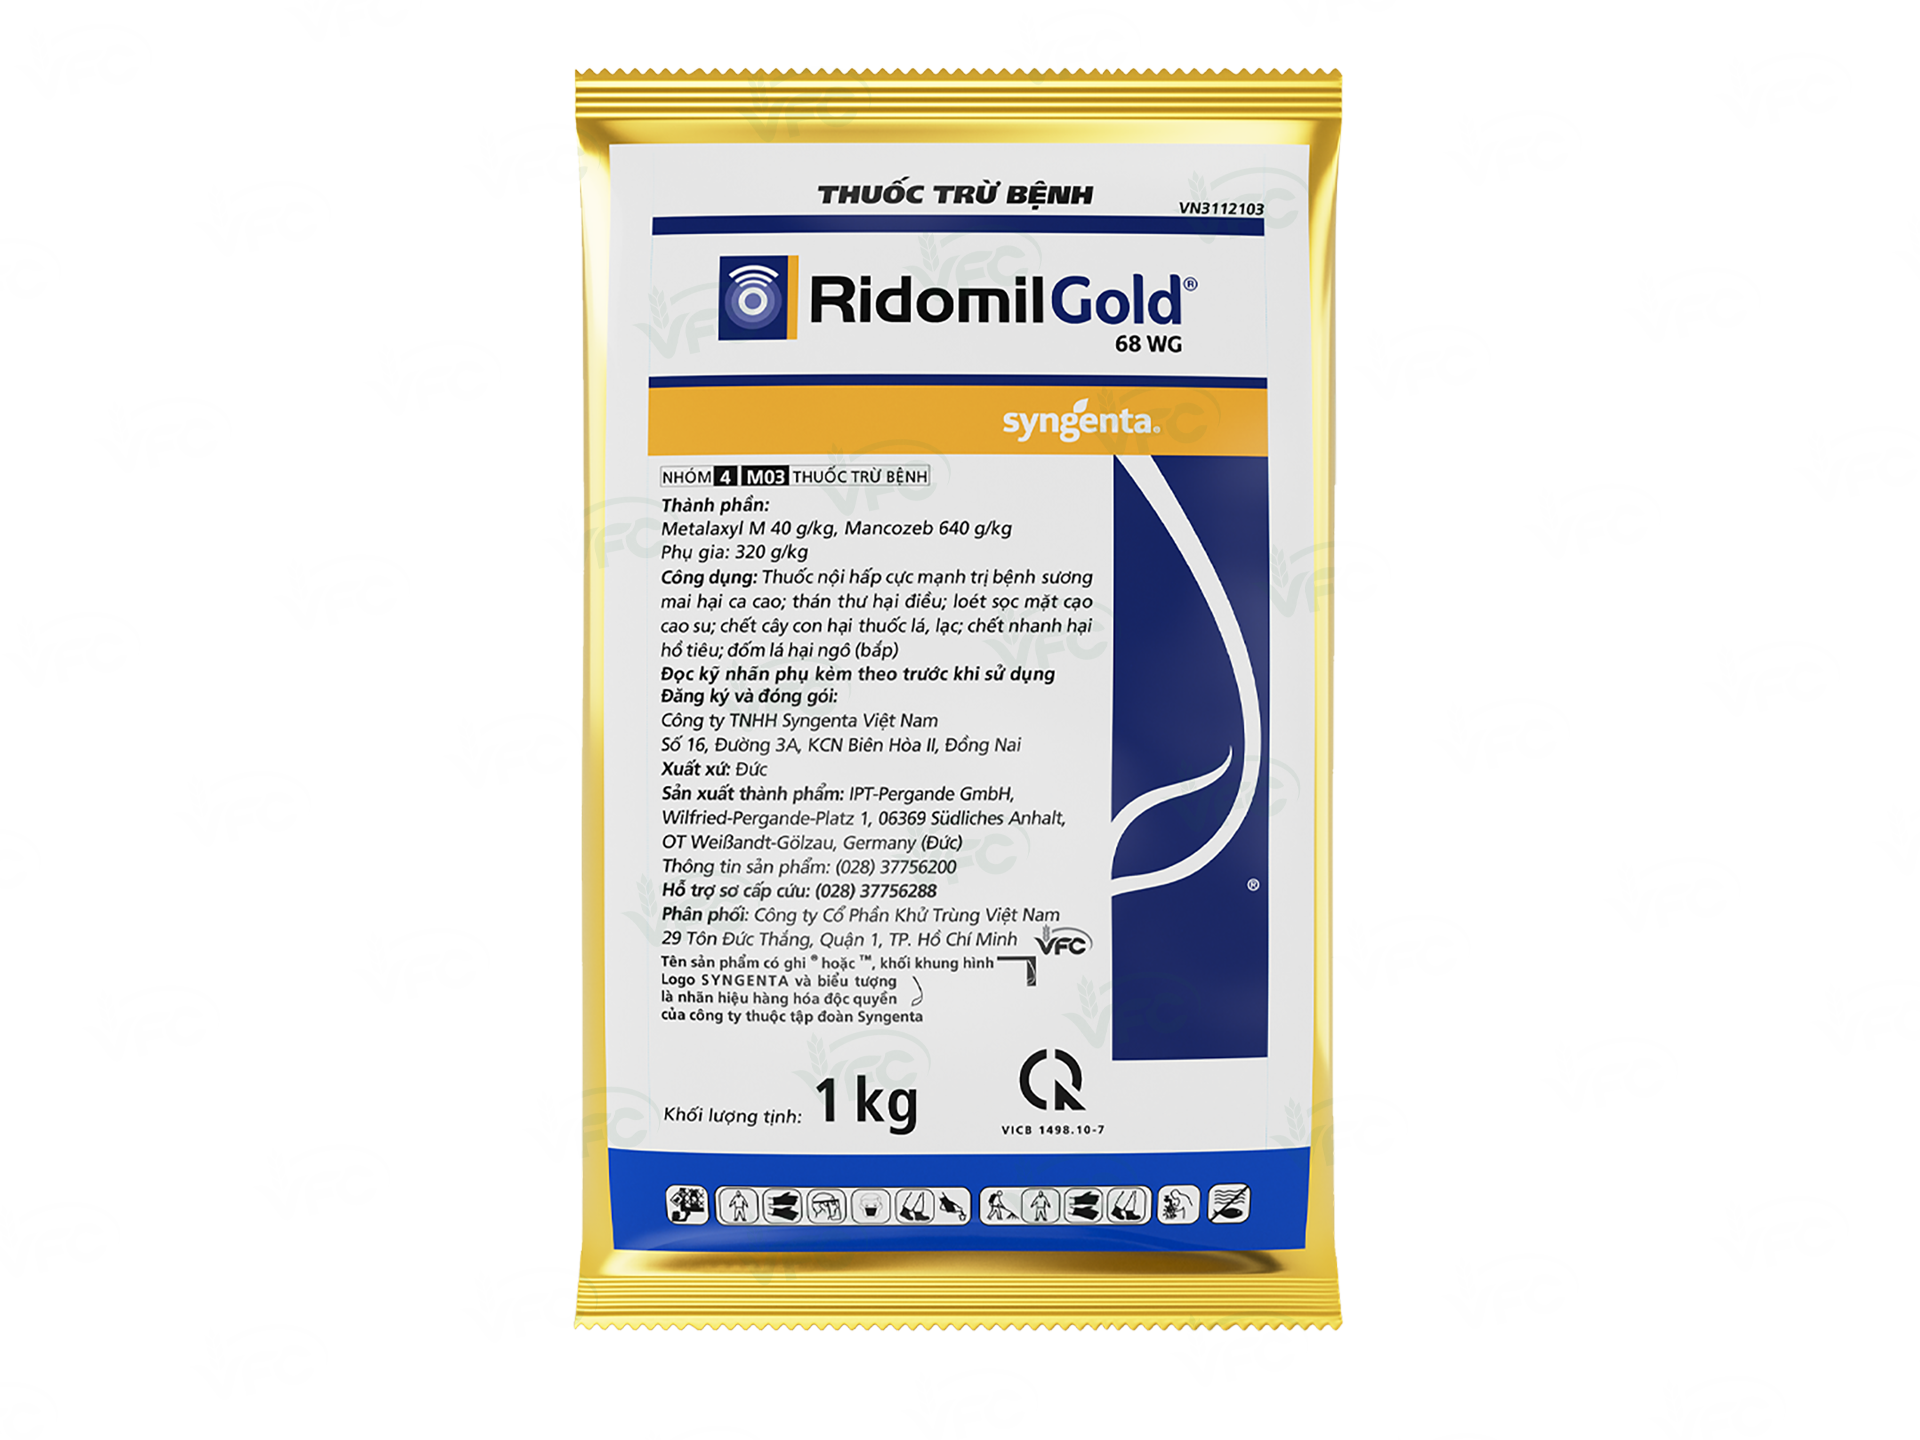 RIDOMIL GOLD 68WG